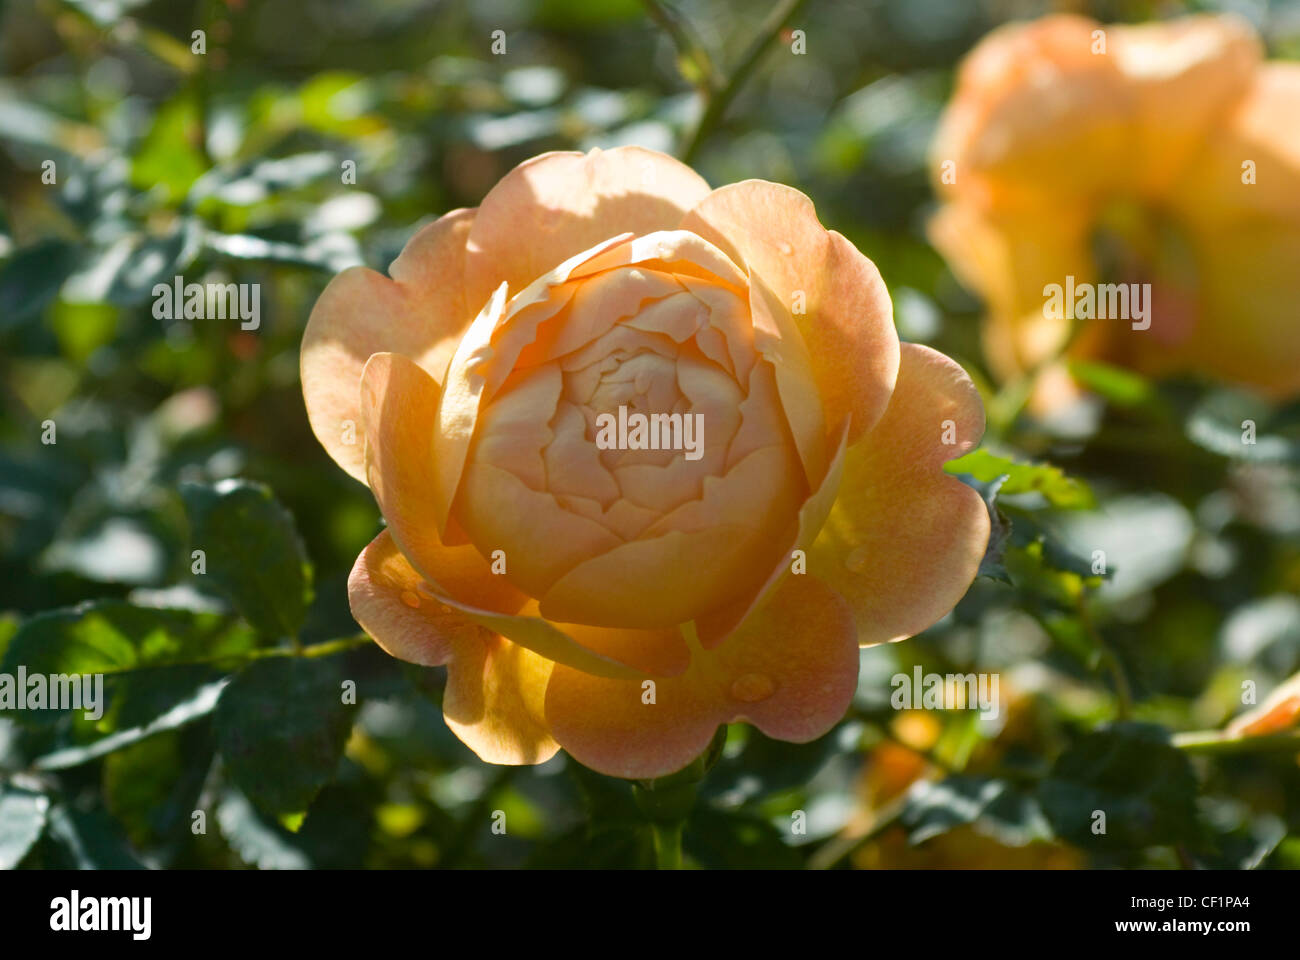 English rose 'Lady of Shalott' Stock Photo